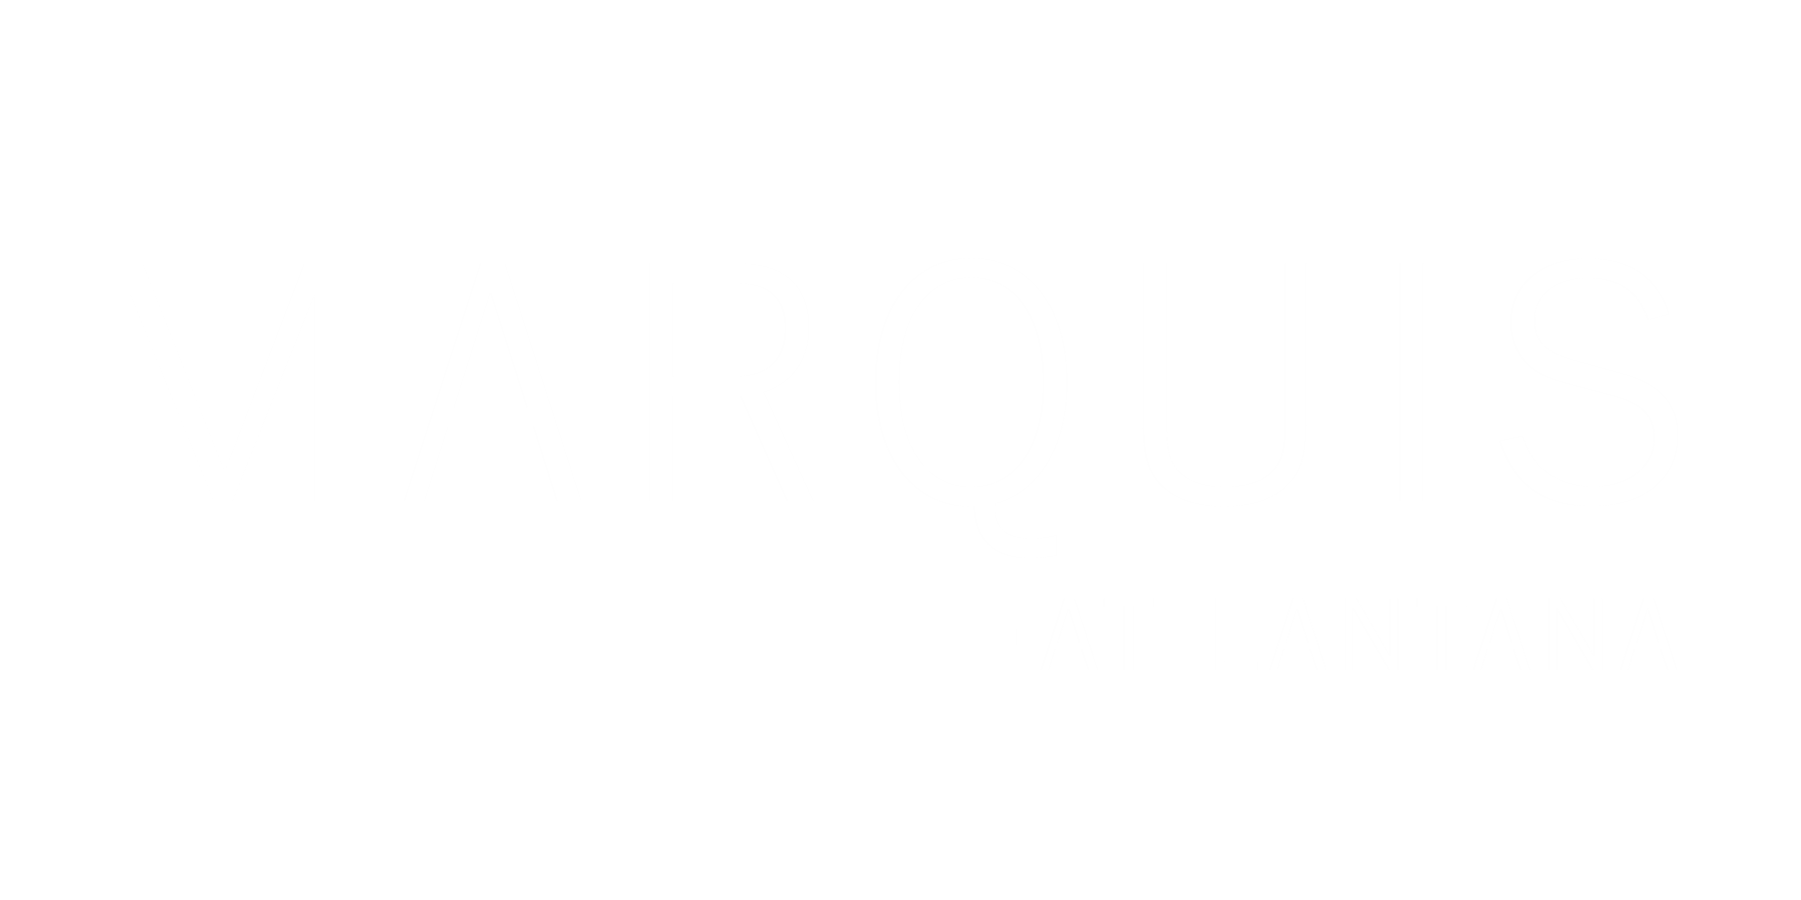 Marquis at Lantana Logo.